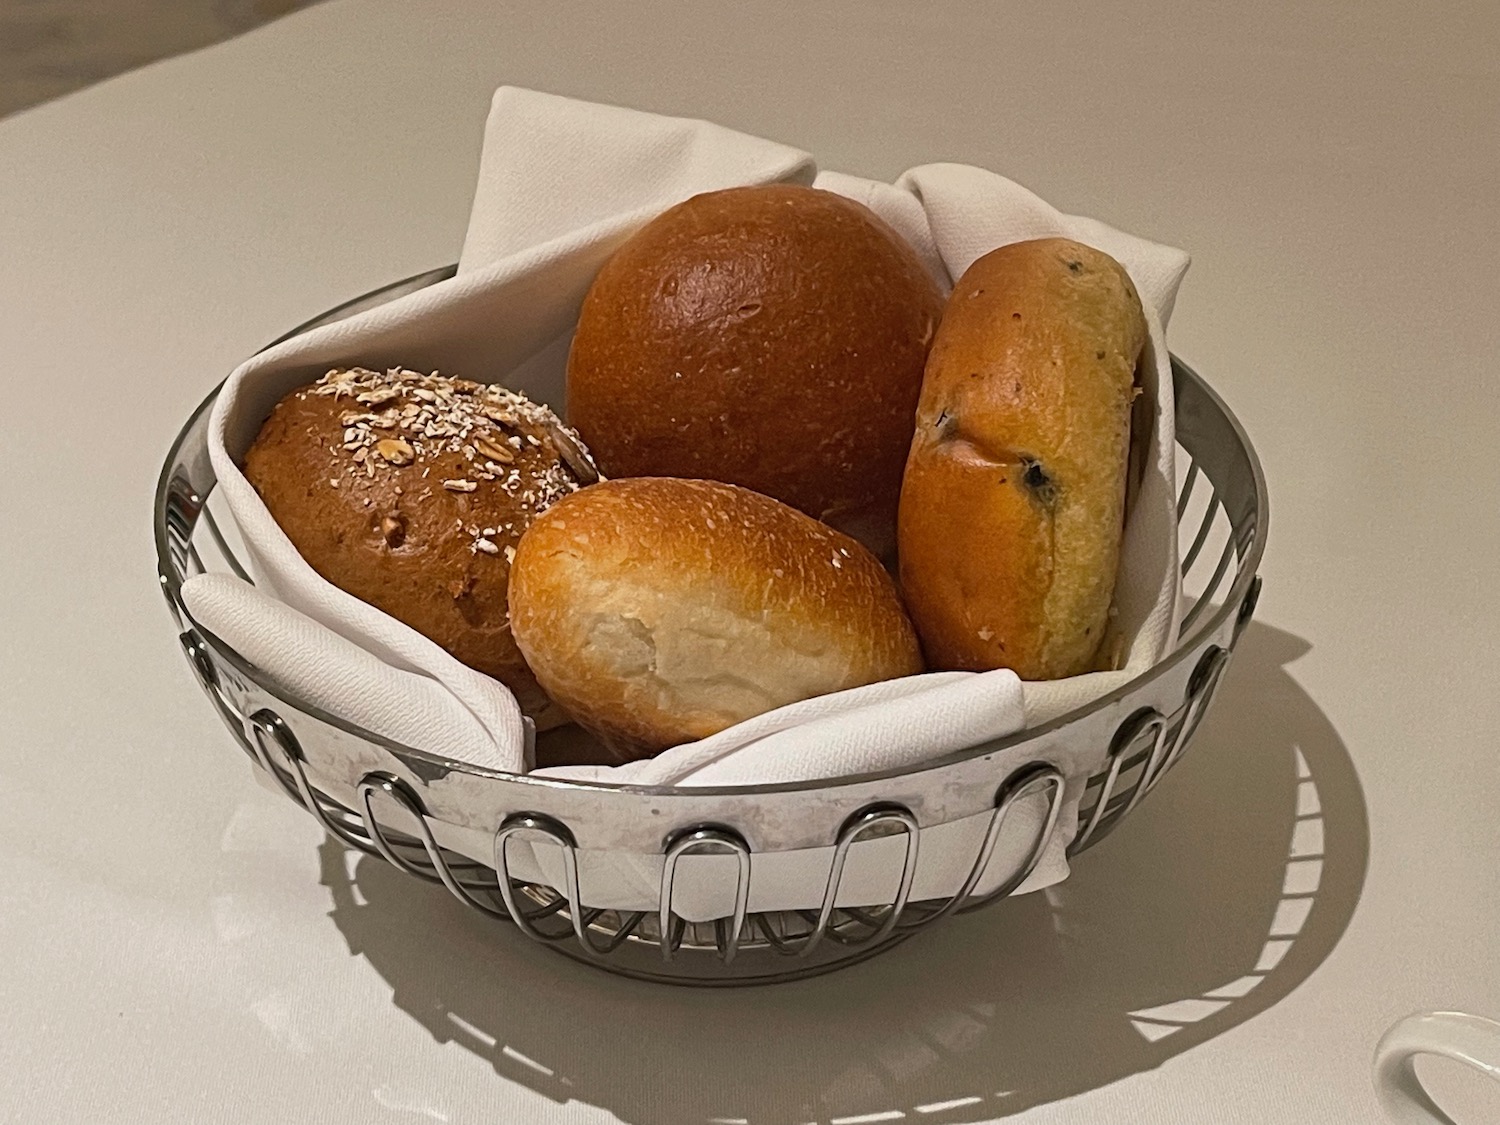 a basket of bread rolls